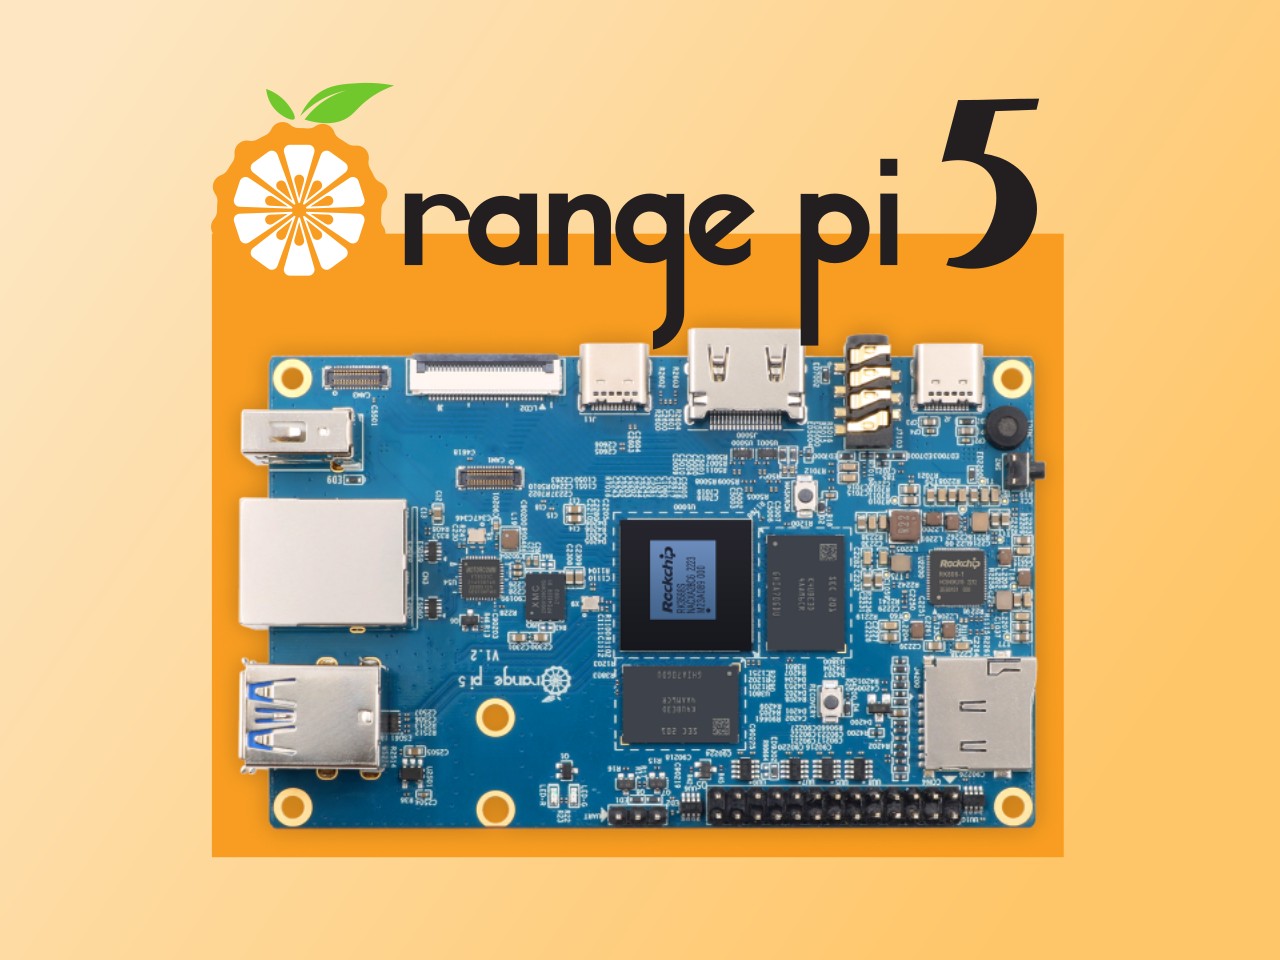 5 8GB LPDDR4 Rockchip RK3588S Octa-core ARMR 64 Bit 8nm LP Process with  QSPI Nor FLASH 16MB, 8K Video Codec Single Board Computer Run Orange Pi  OS(Pi5